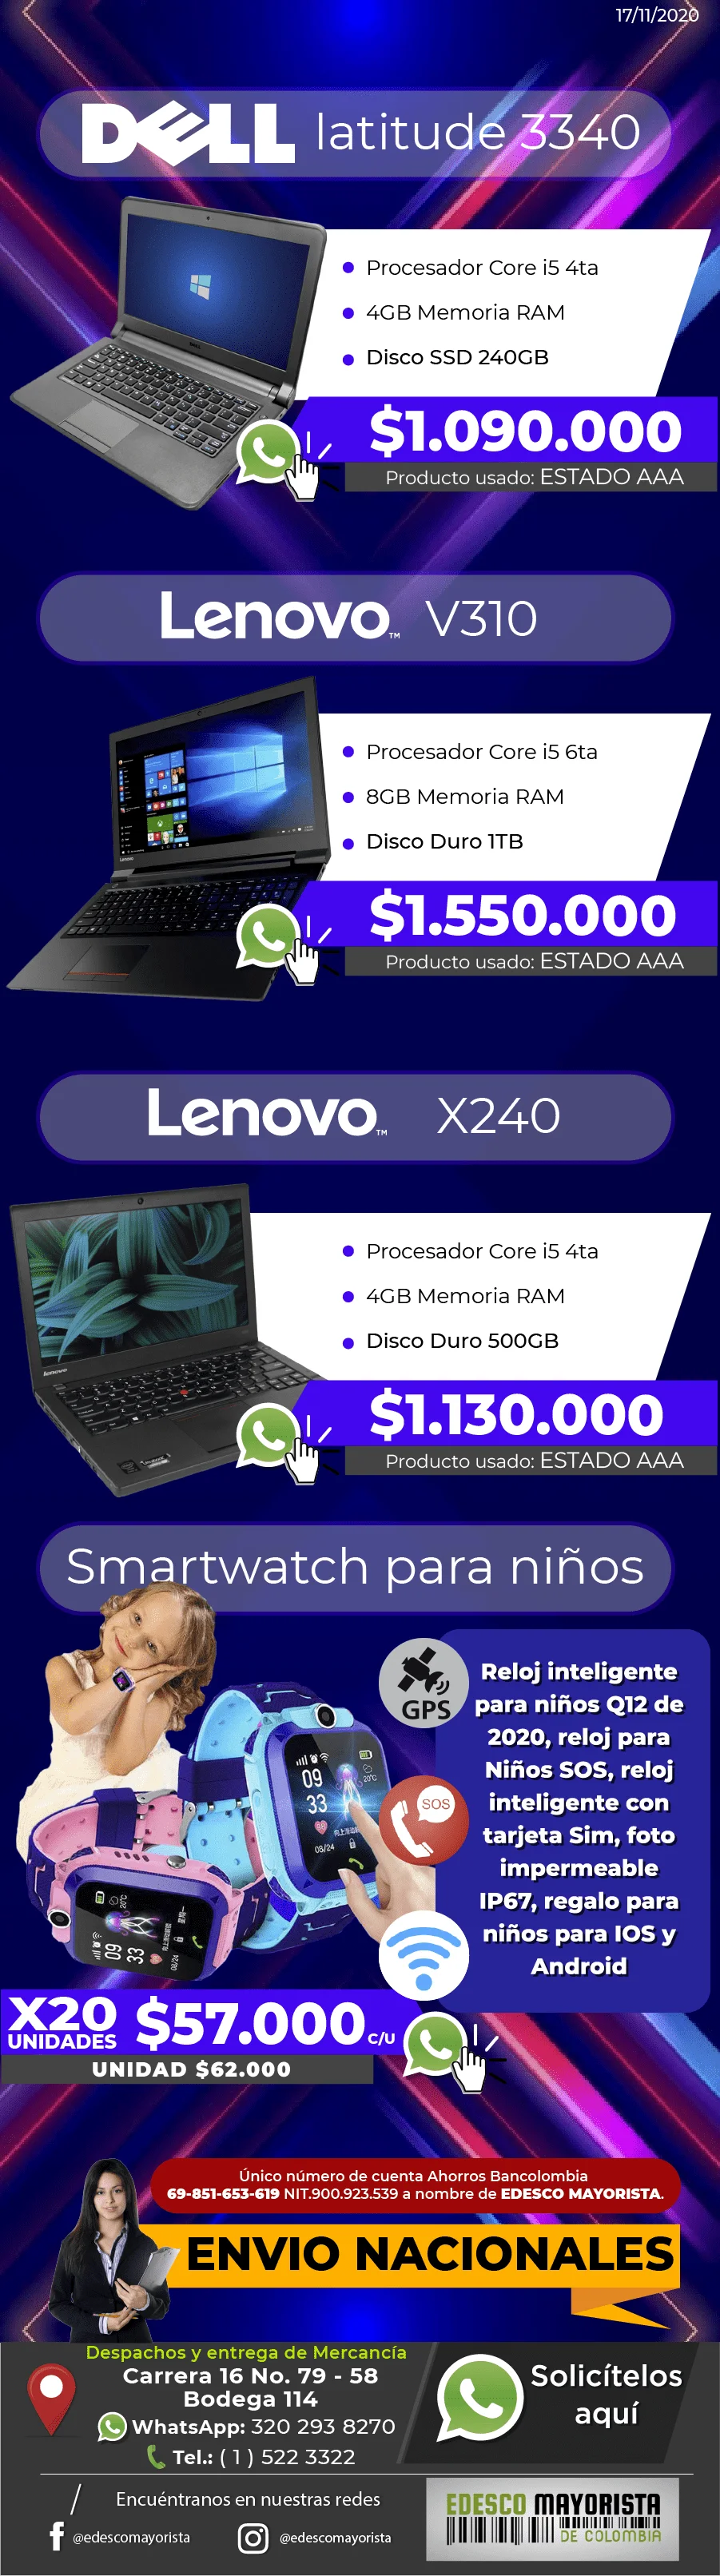 Portátil Lenovo X240